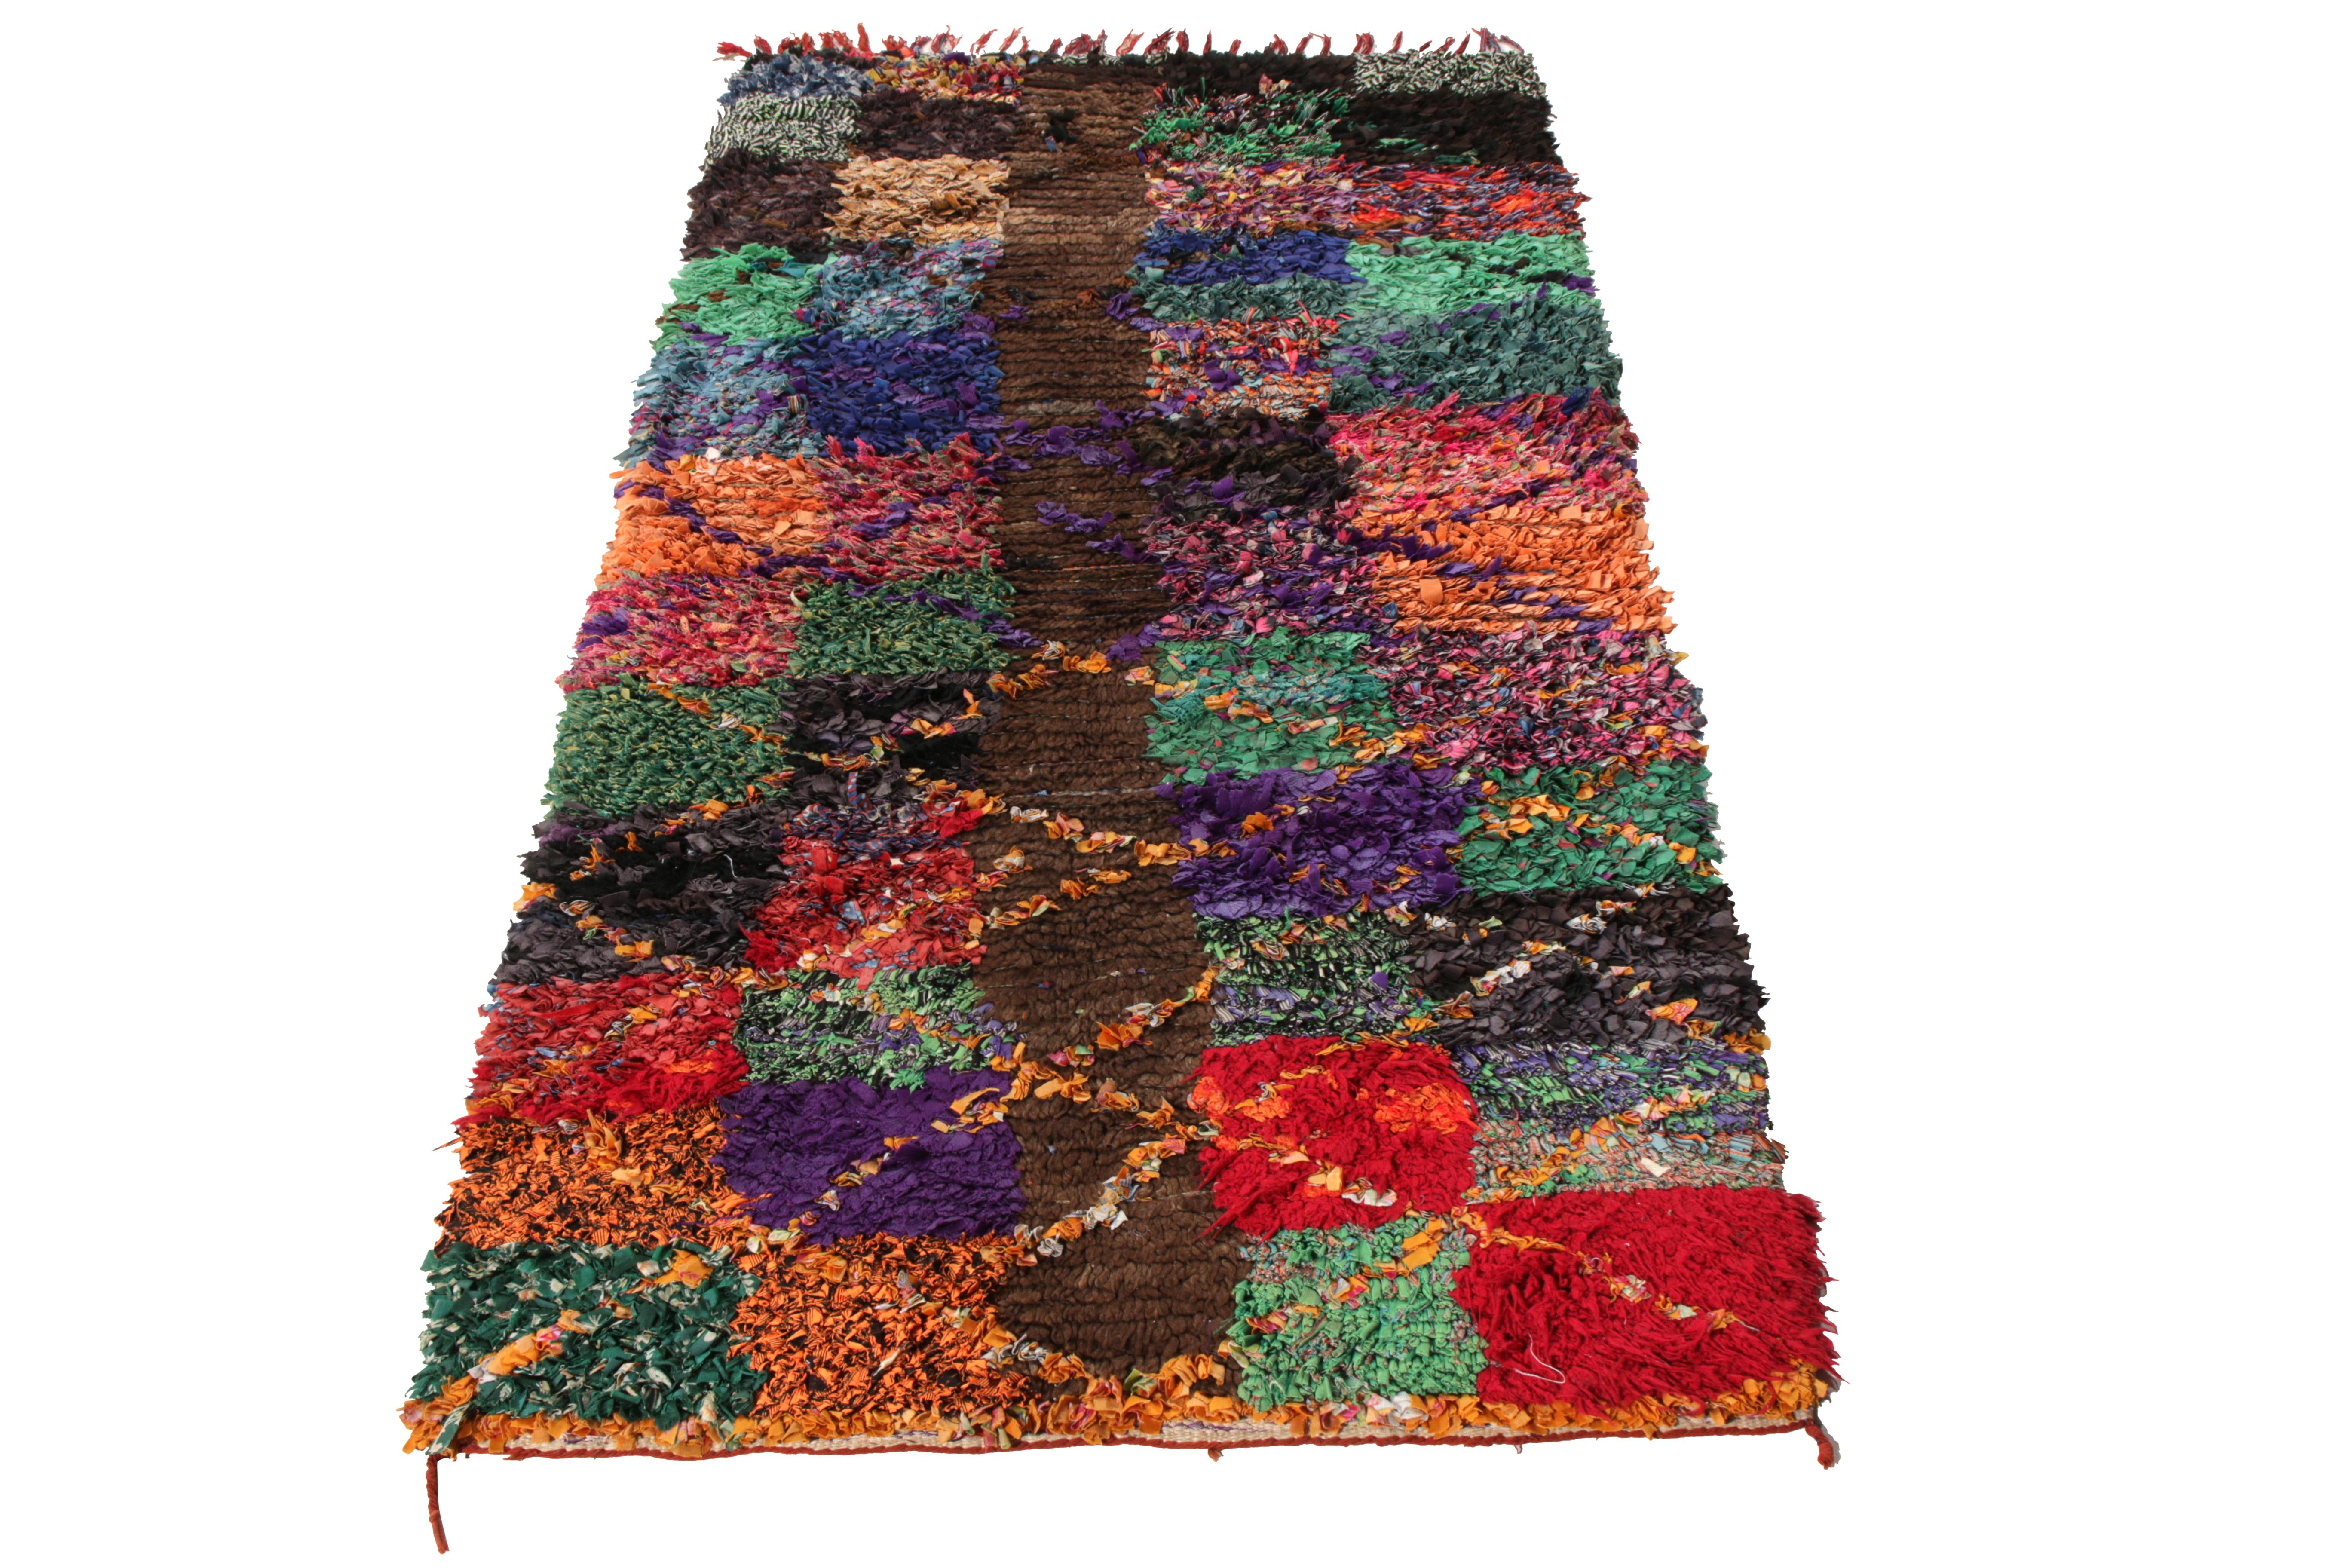 Noué à la main en laine et tissu Boucherouite, ce tapis berbère 3x6 fait partie de la collection de tapis marocains de Rug & Kilim. Originaire du Maroc vers 1950-1960, le tapis de course est créé dans une haute pile présentant un incroyable motif